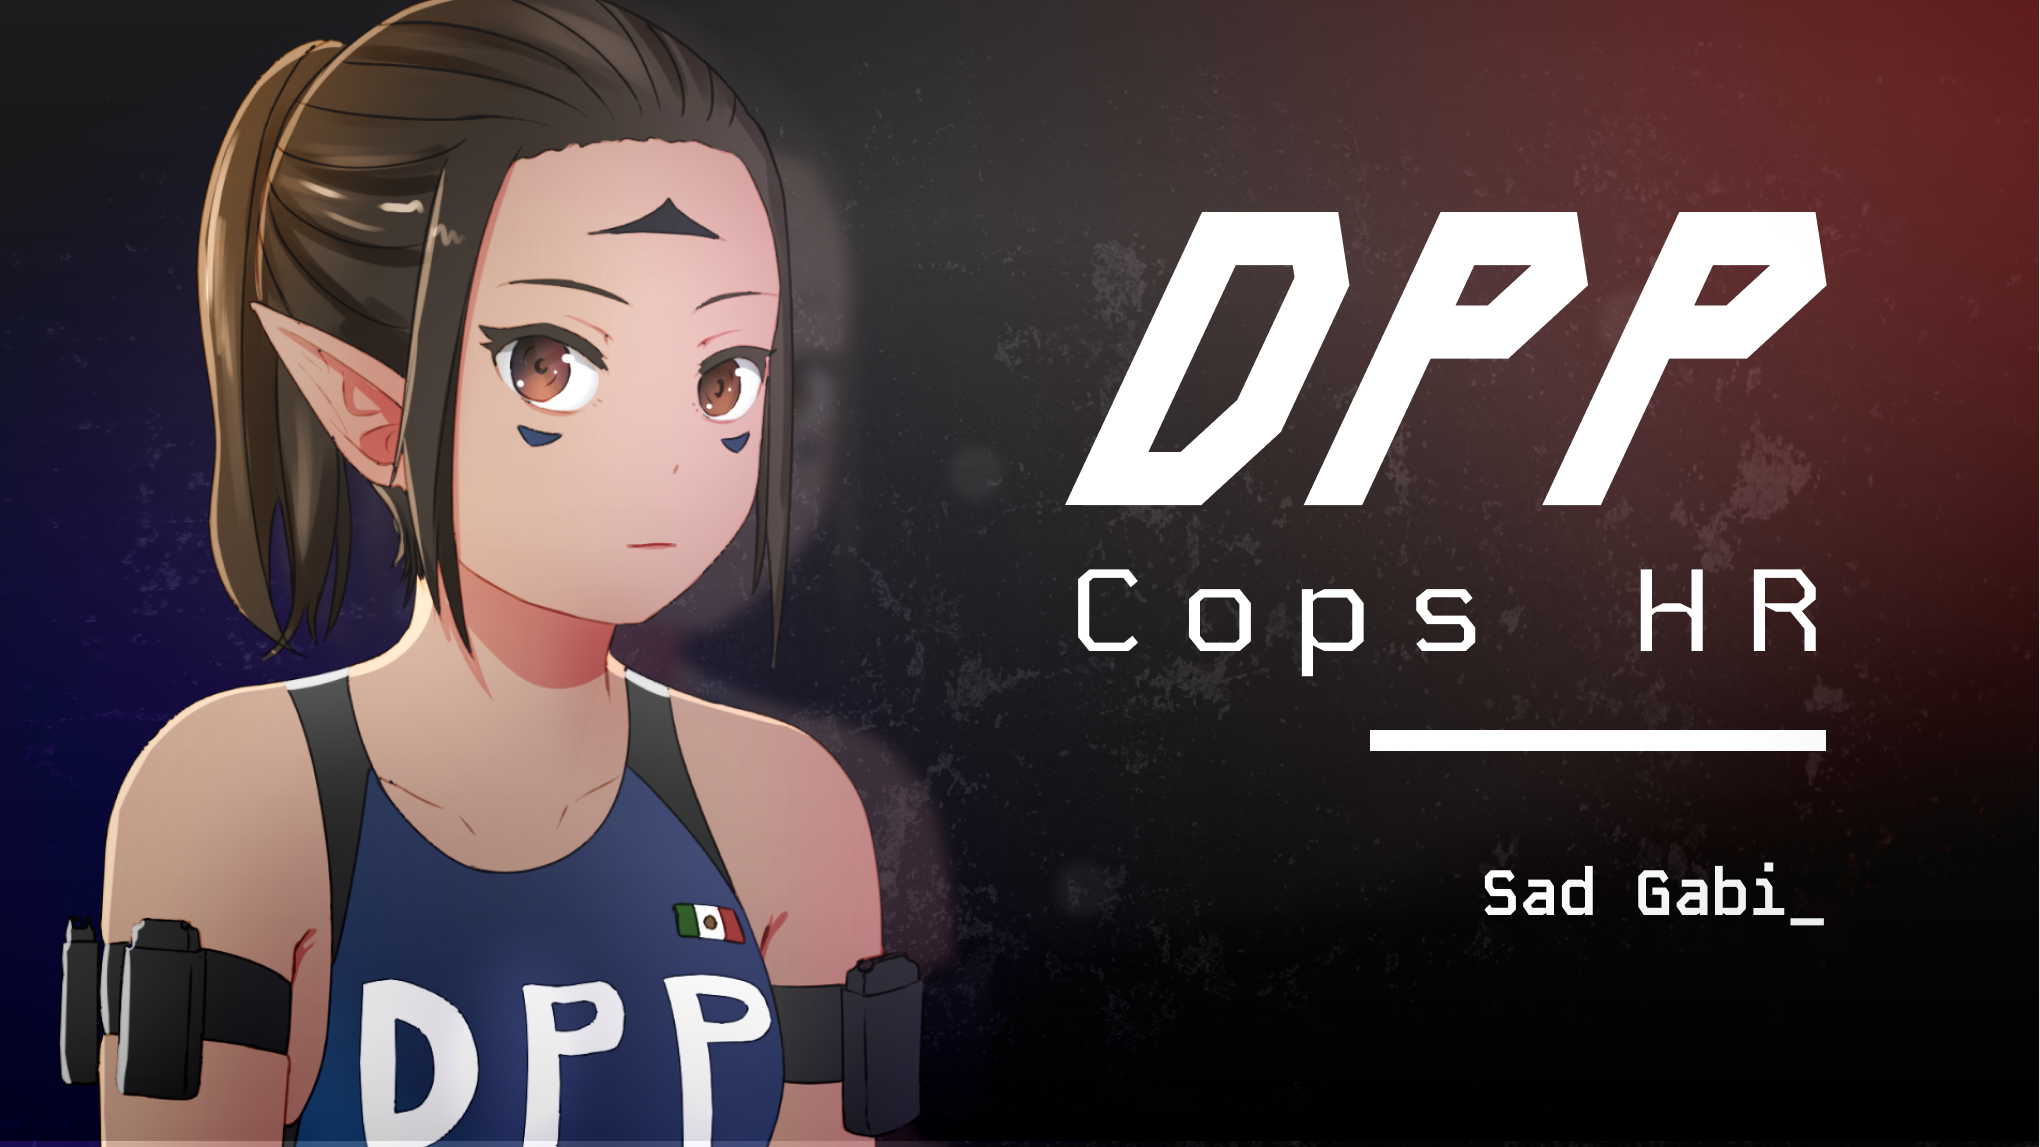 DPP: Cops HR